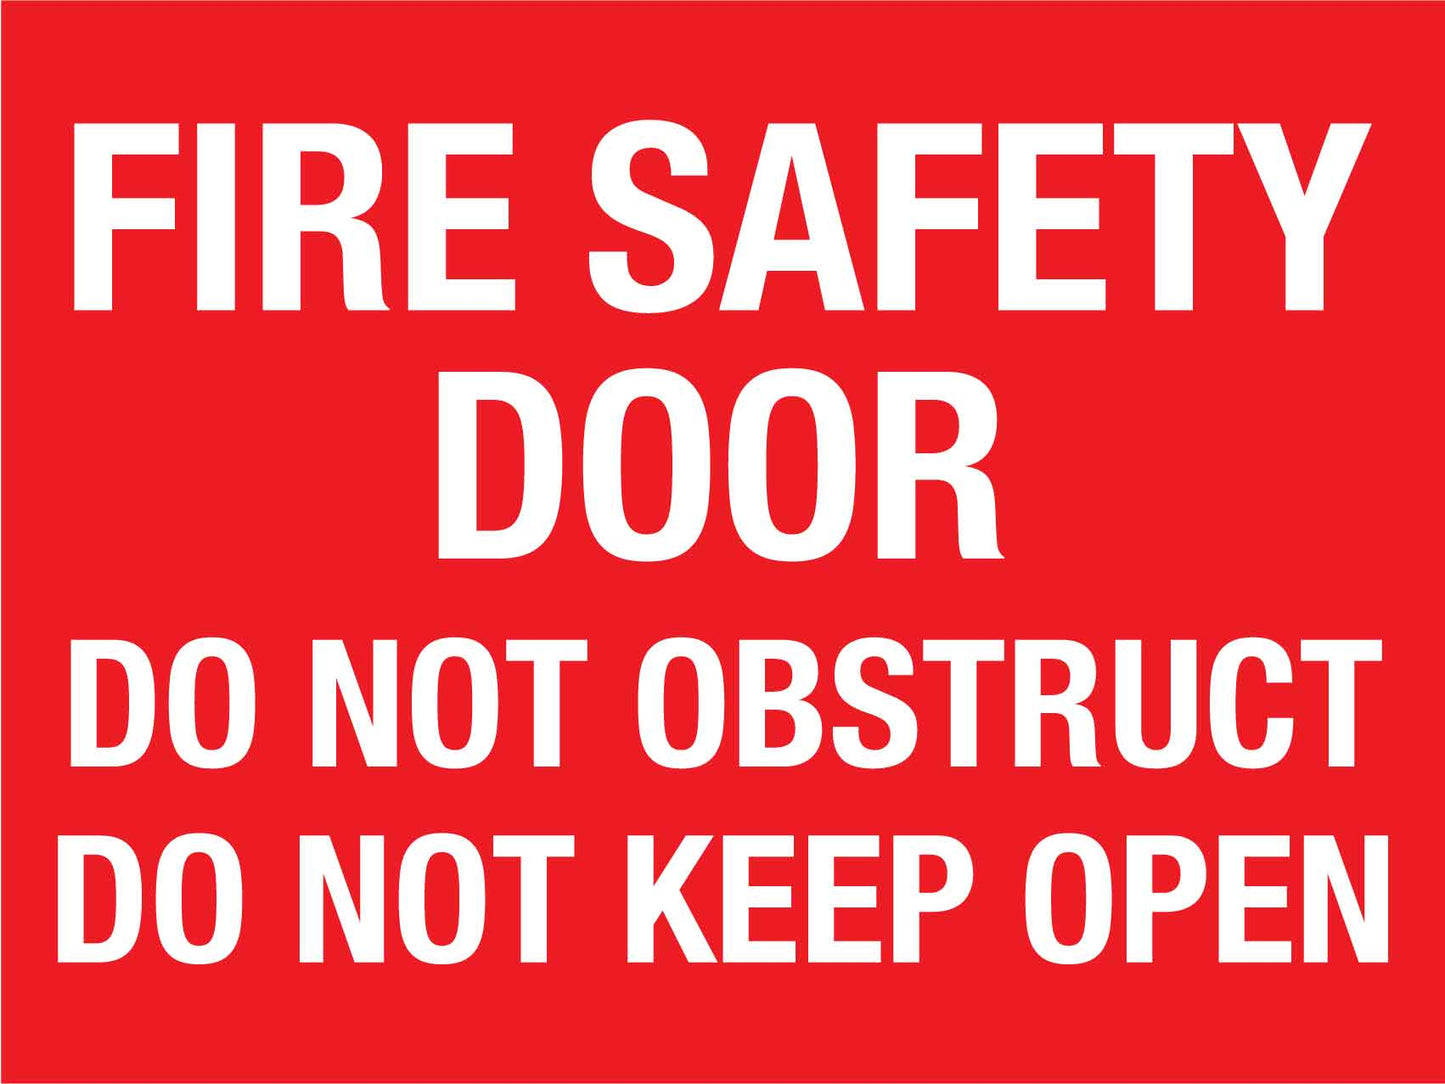 Fire Safety Door Do Not Obstruct Do Not Keep Open Big Header Sign